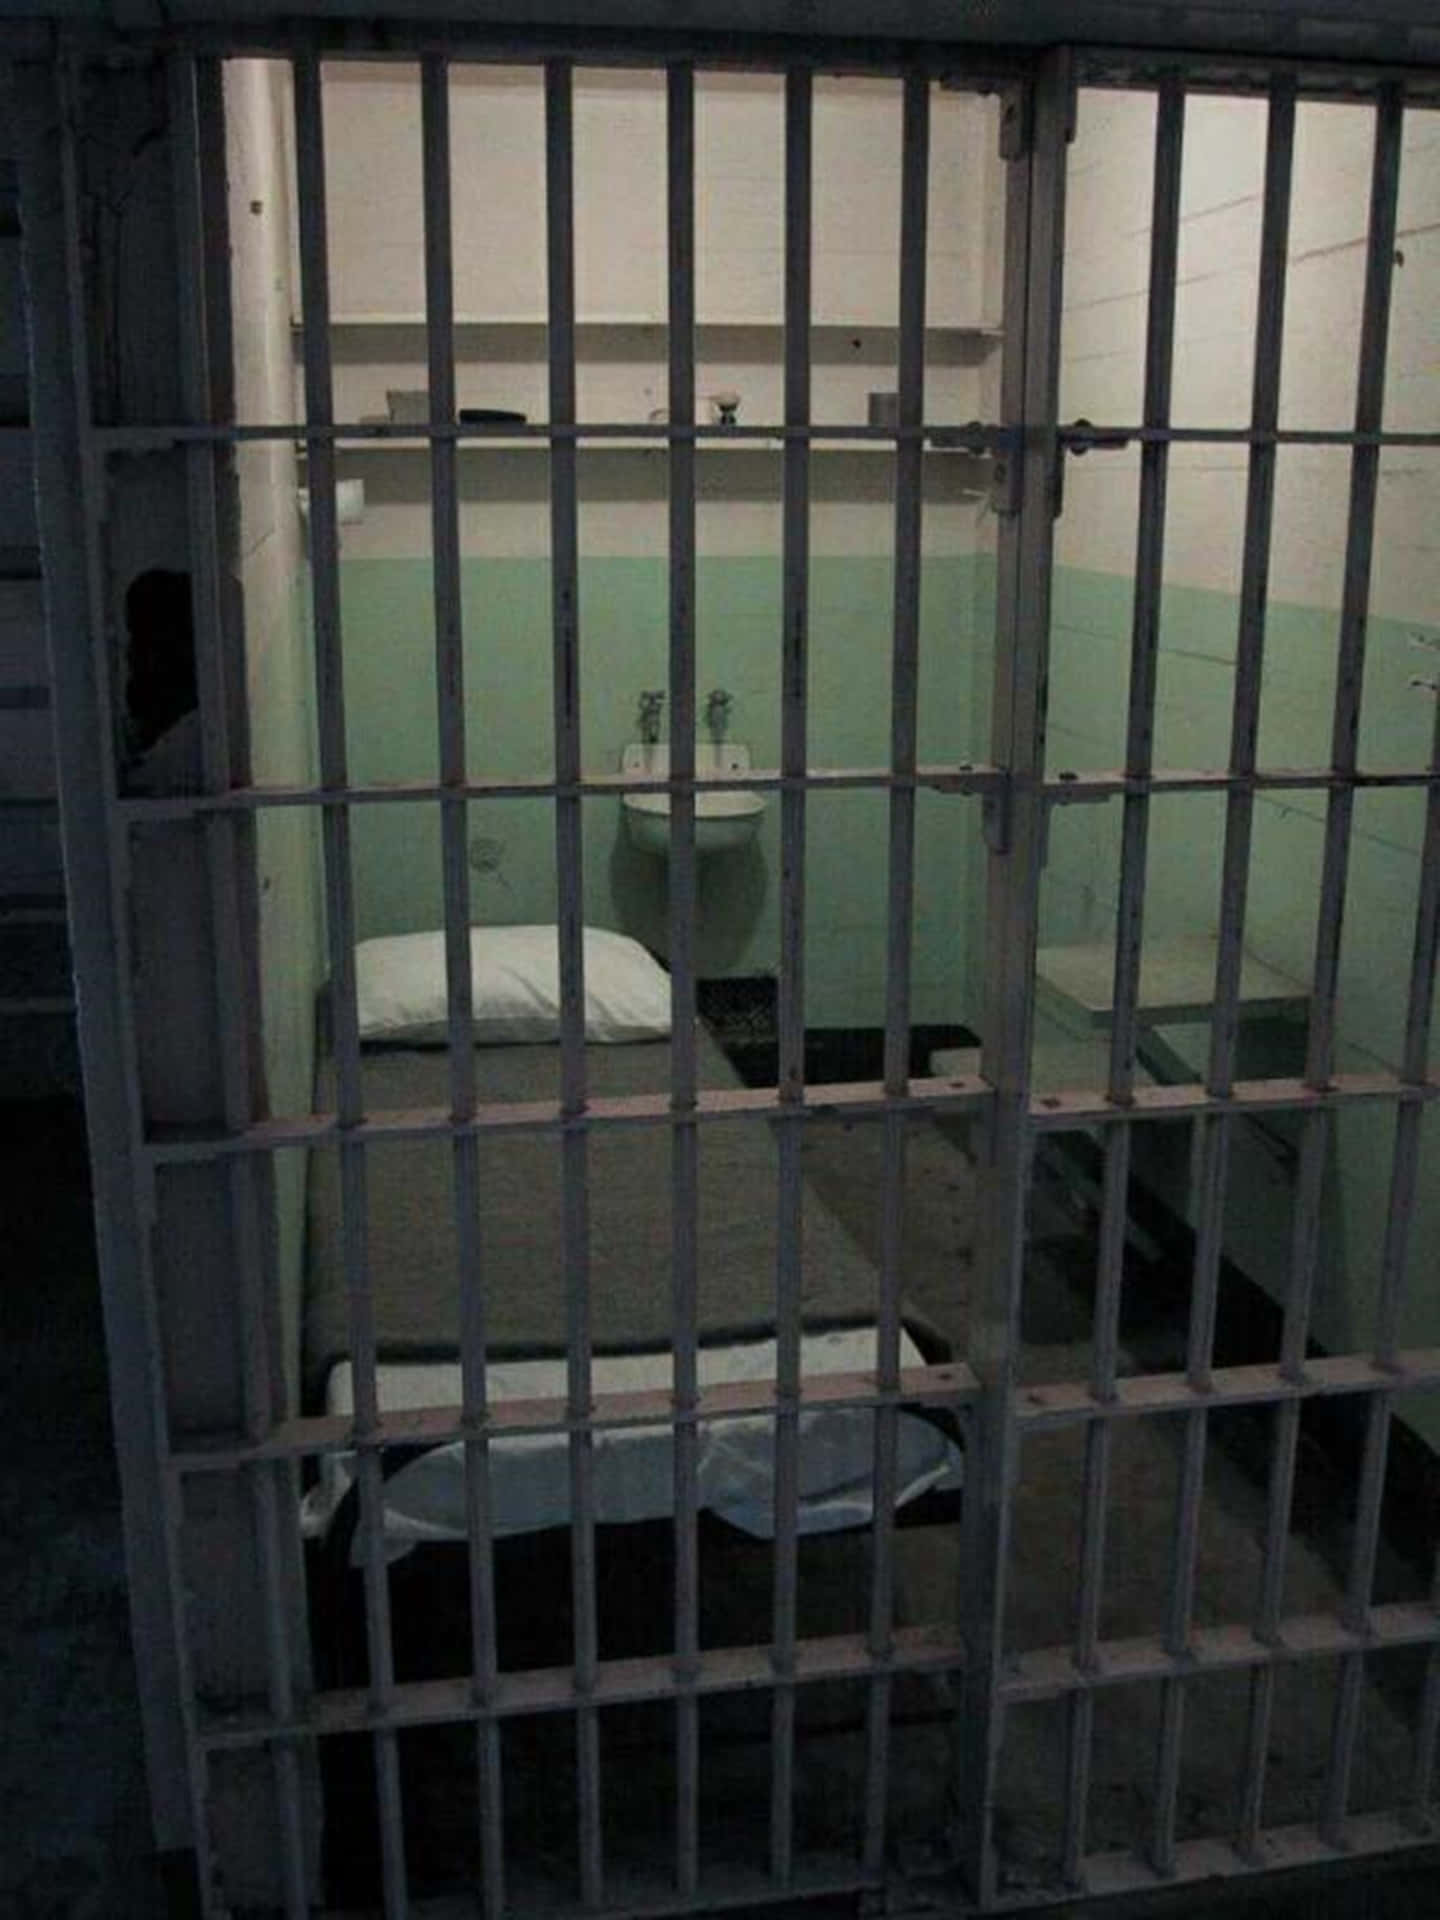 Einblick In Eine Gefängniszelle